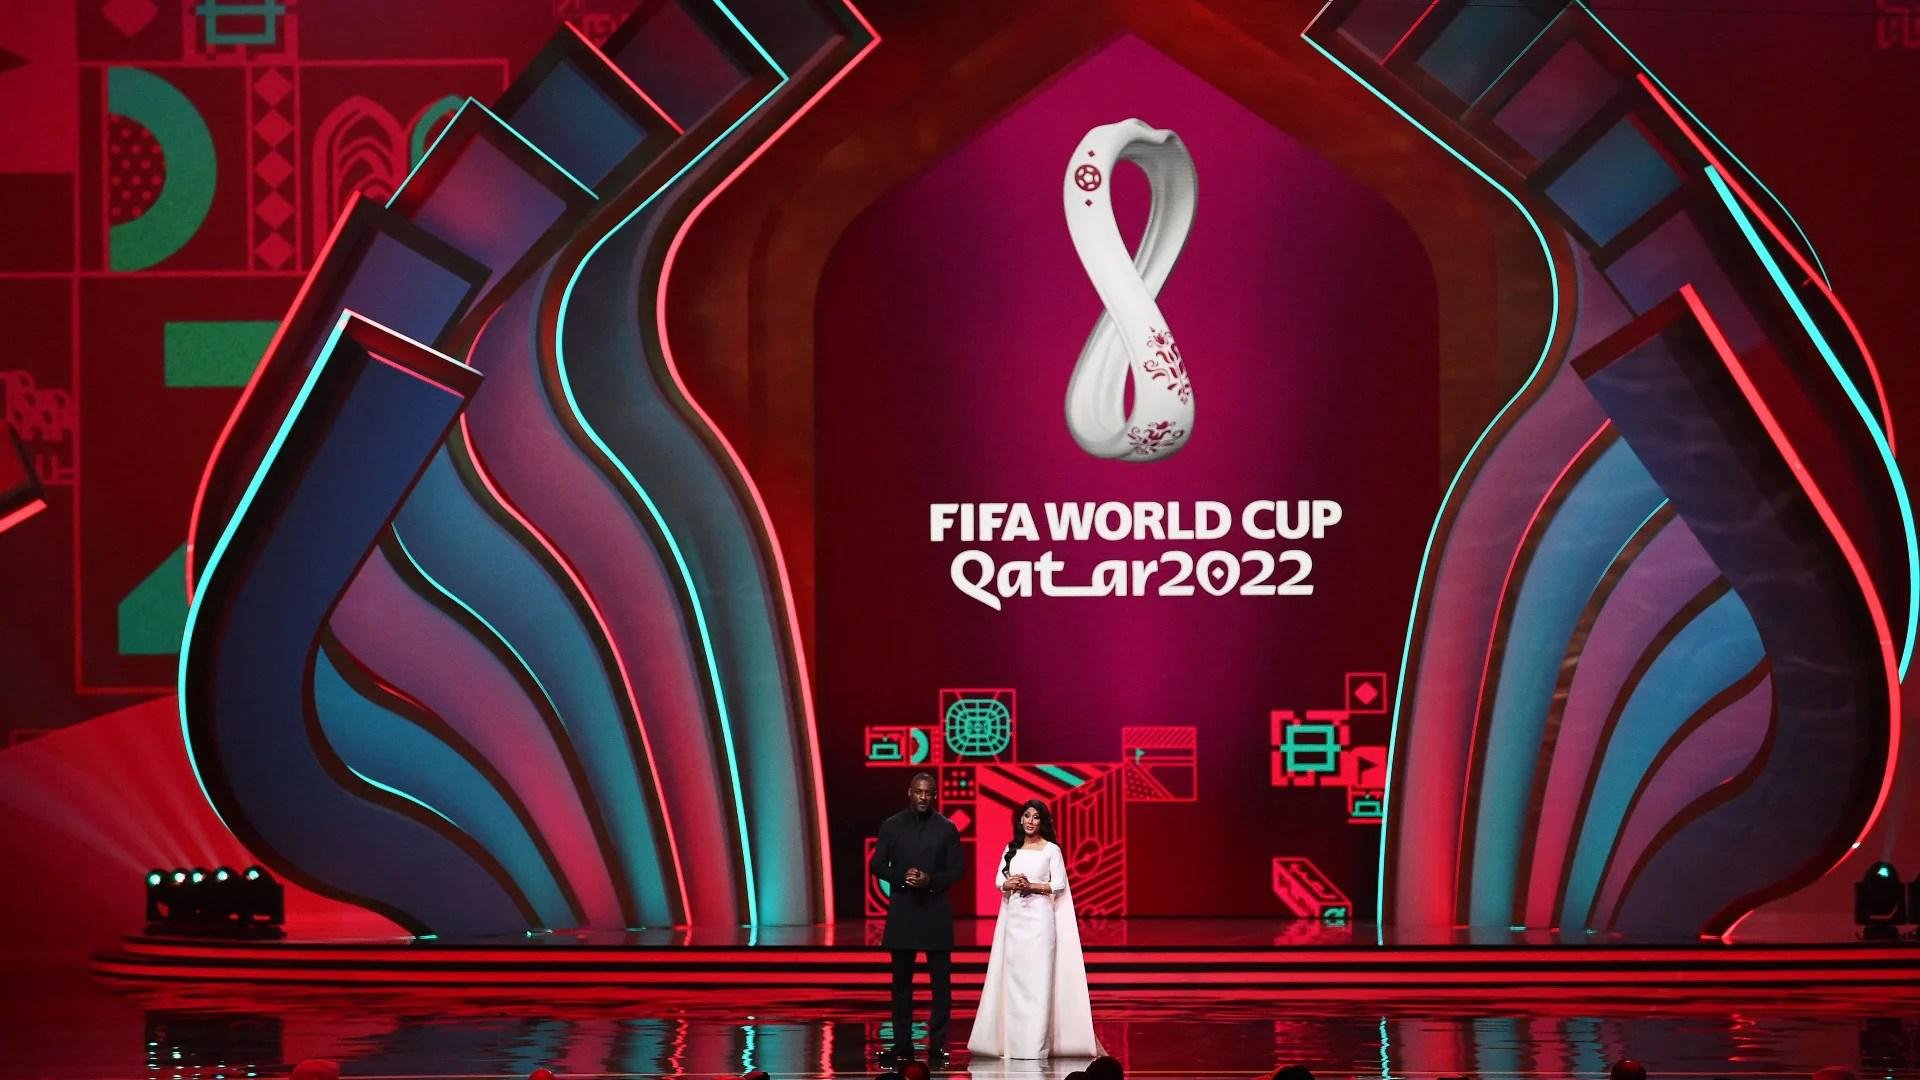 FIFA 23 simula Copa do Mundo em novo modo e Argentina é campeã